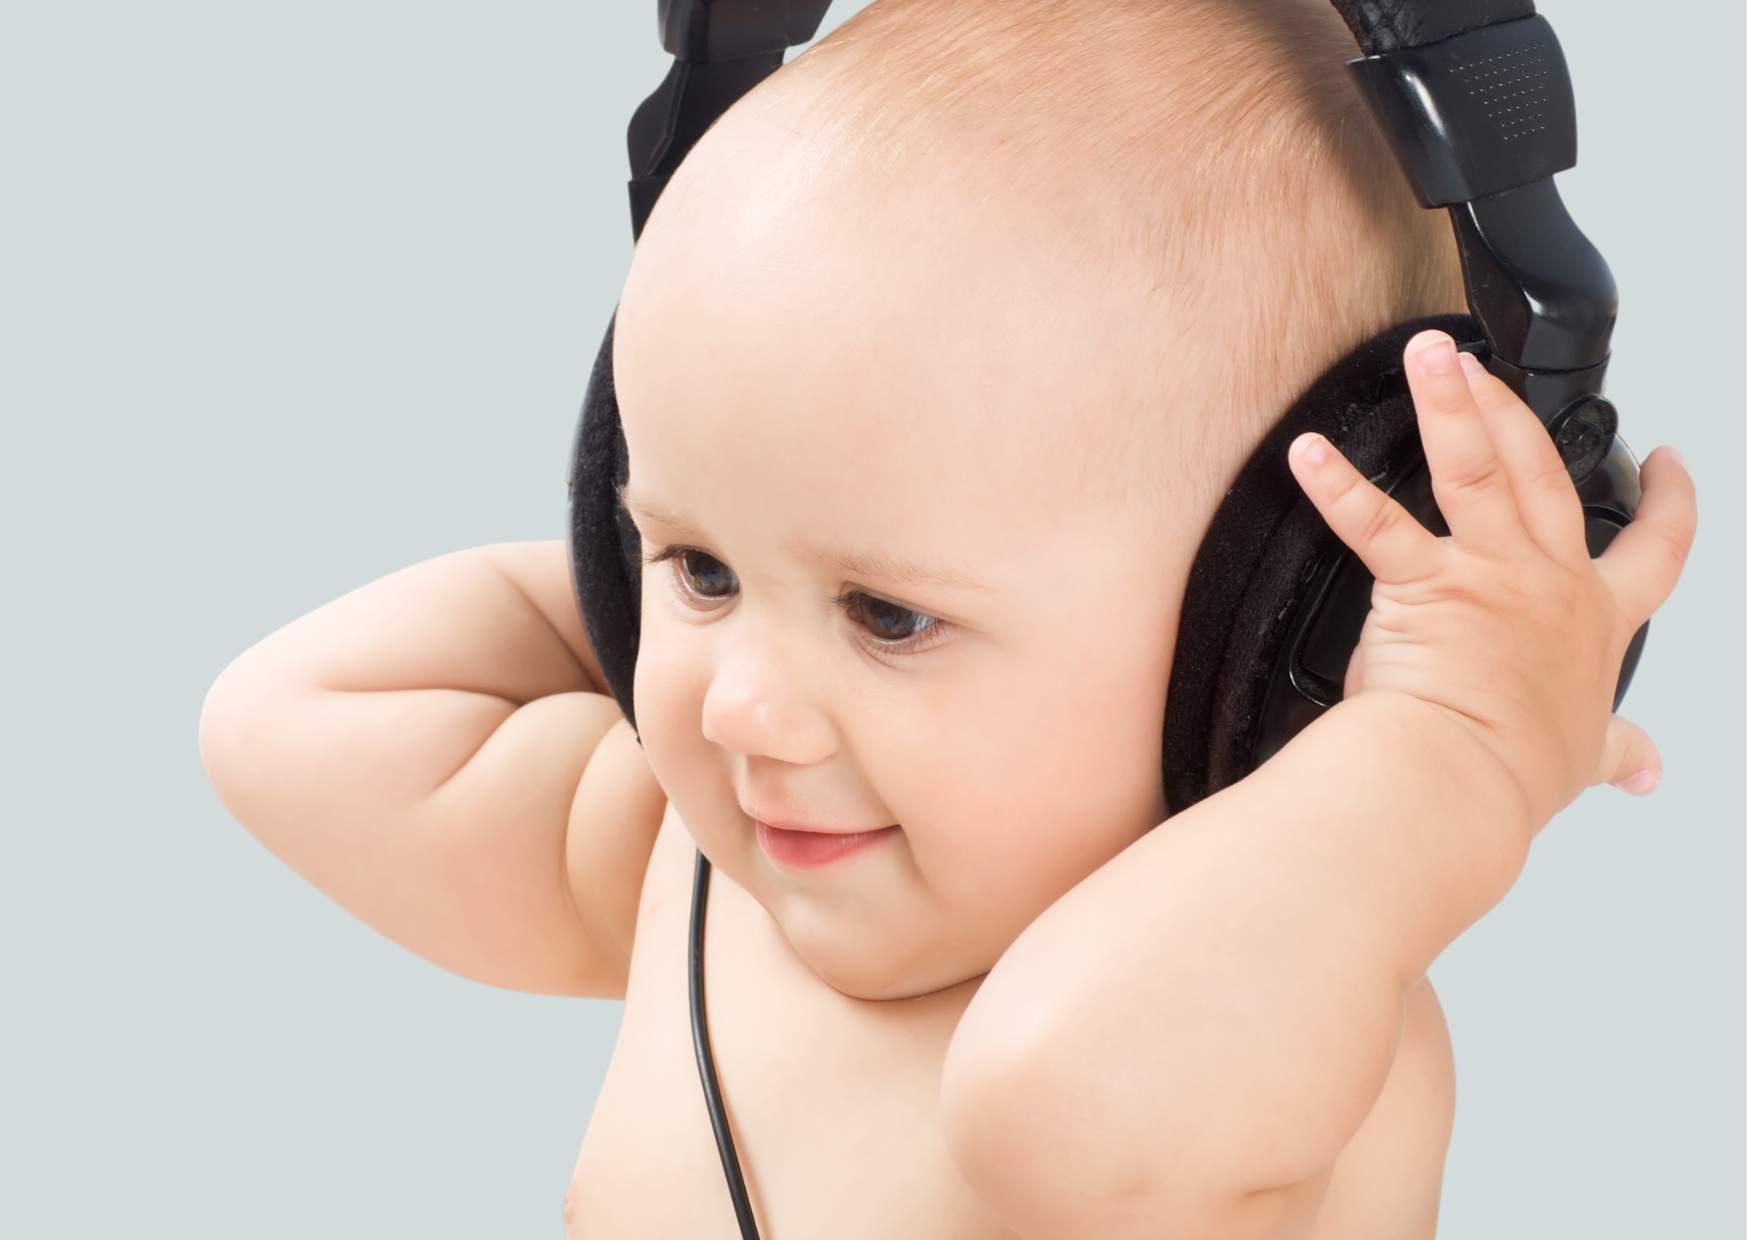 Avaliação audiológica infantil em campo livre ou com fones? - FONOTOM